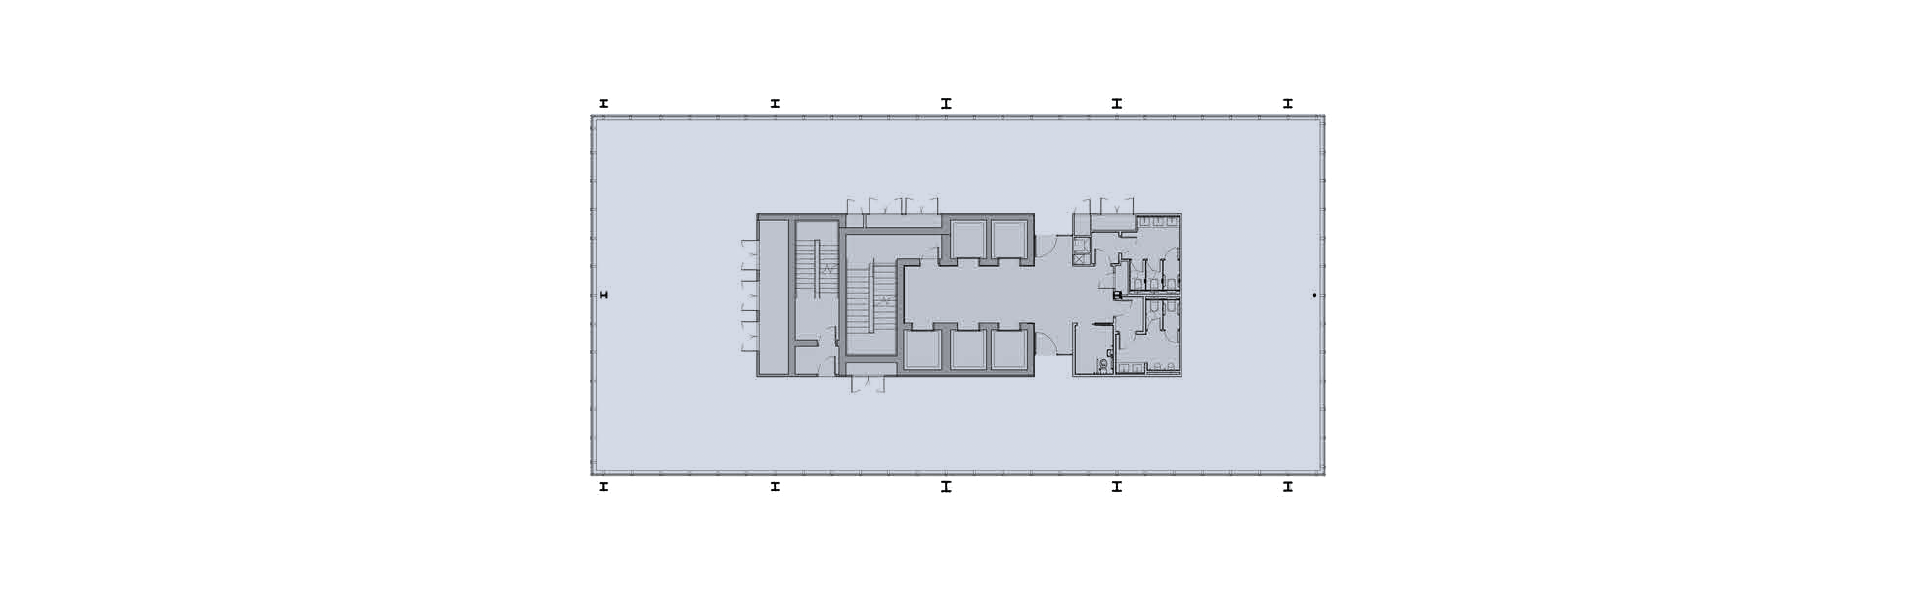 Floor plan 9 - 15